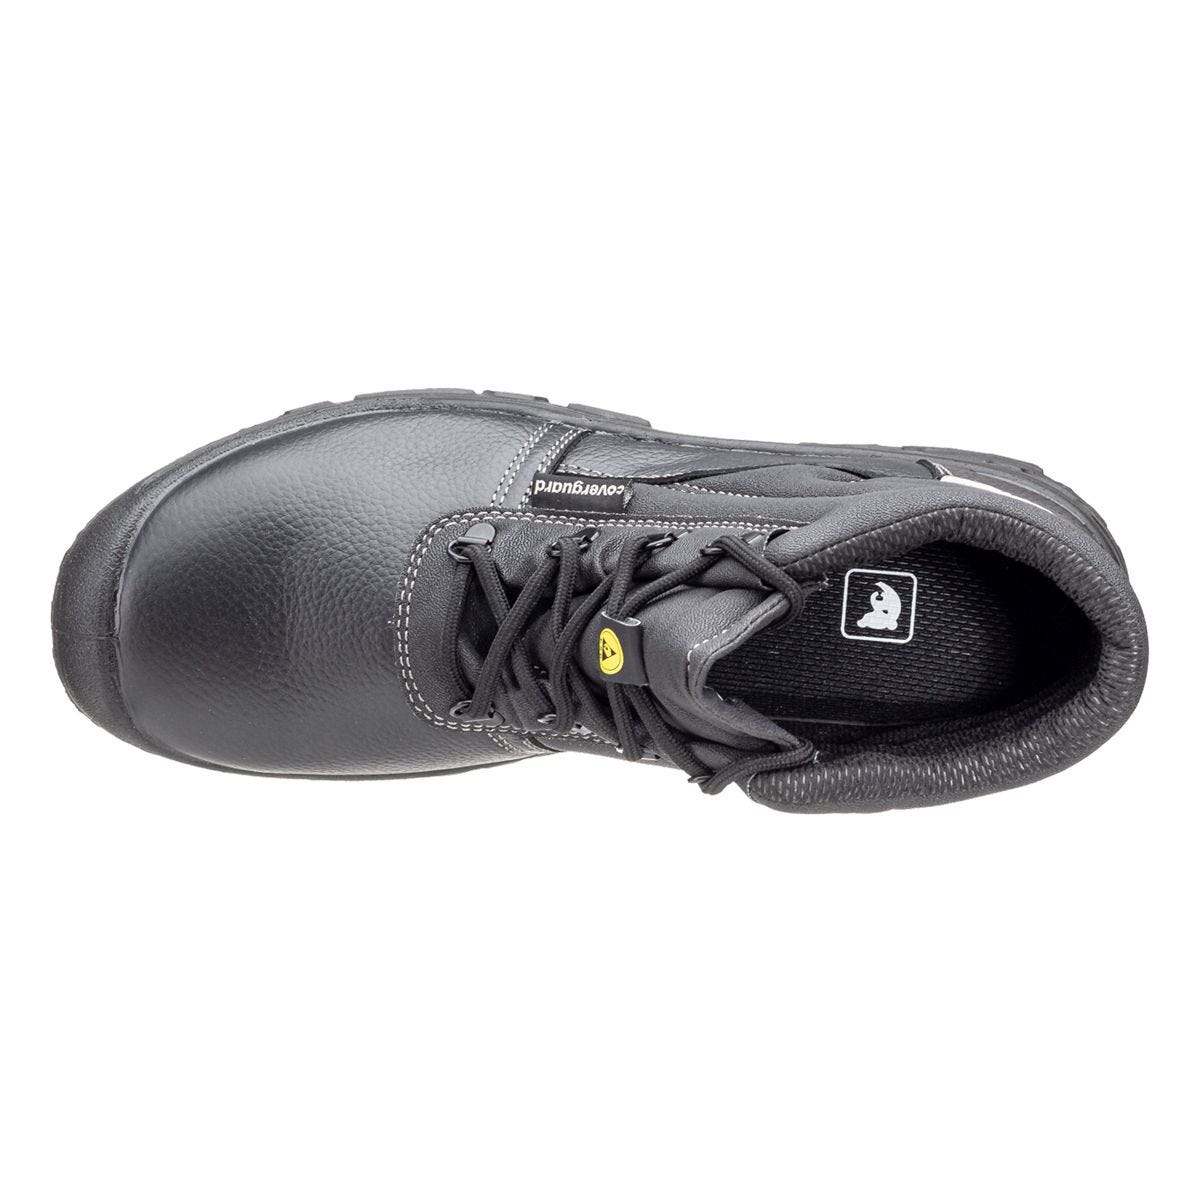 Chaussures de sécurité hautes Azurite II S3 ESD noir - Coverguard - Taille 45 3